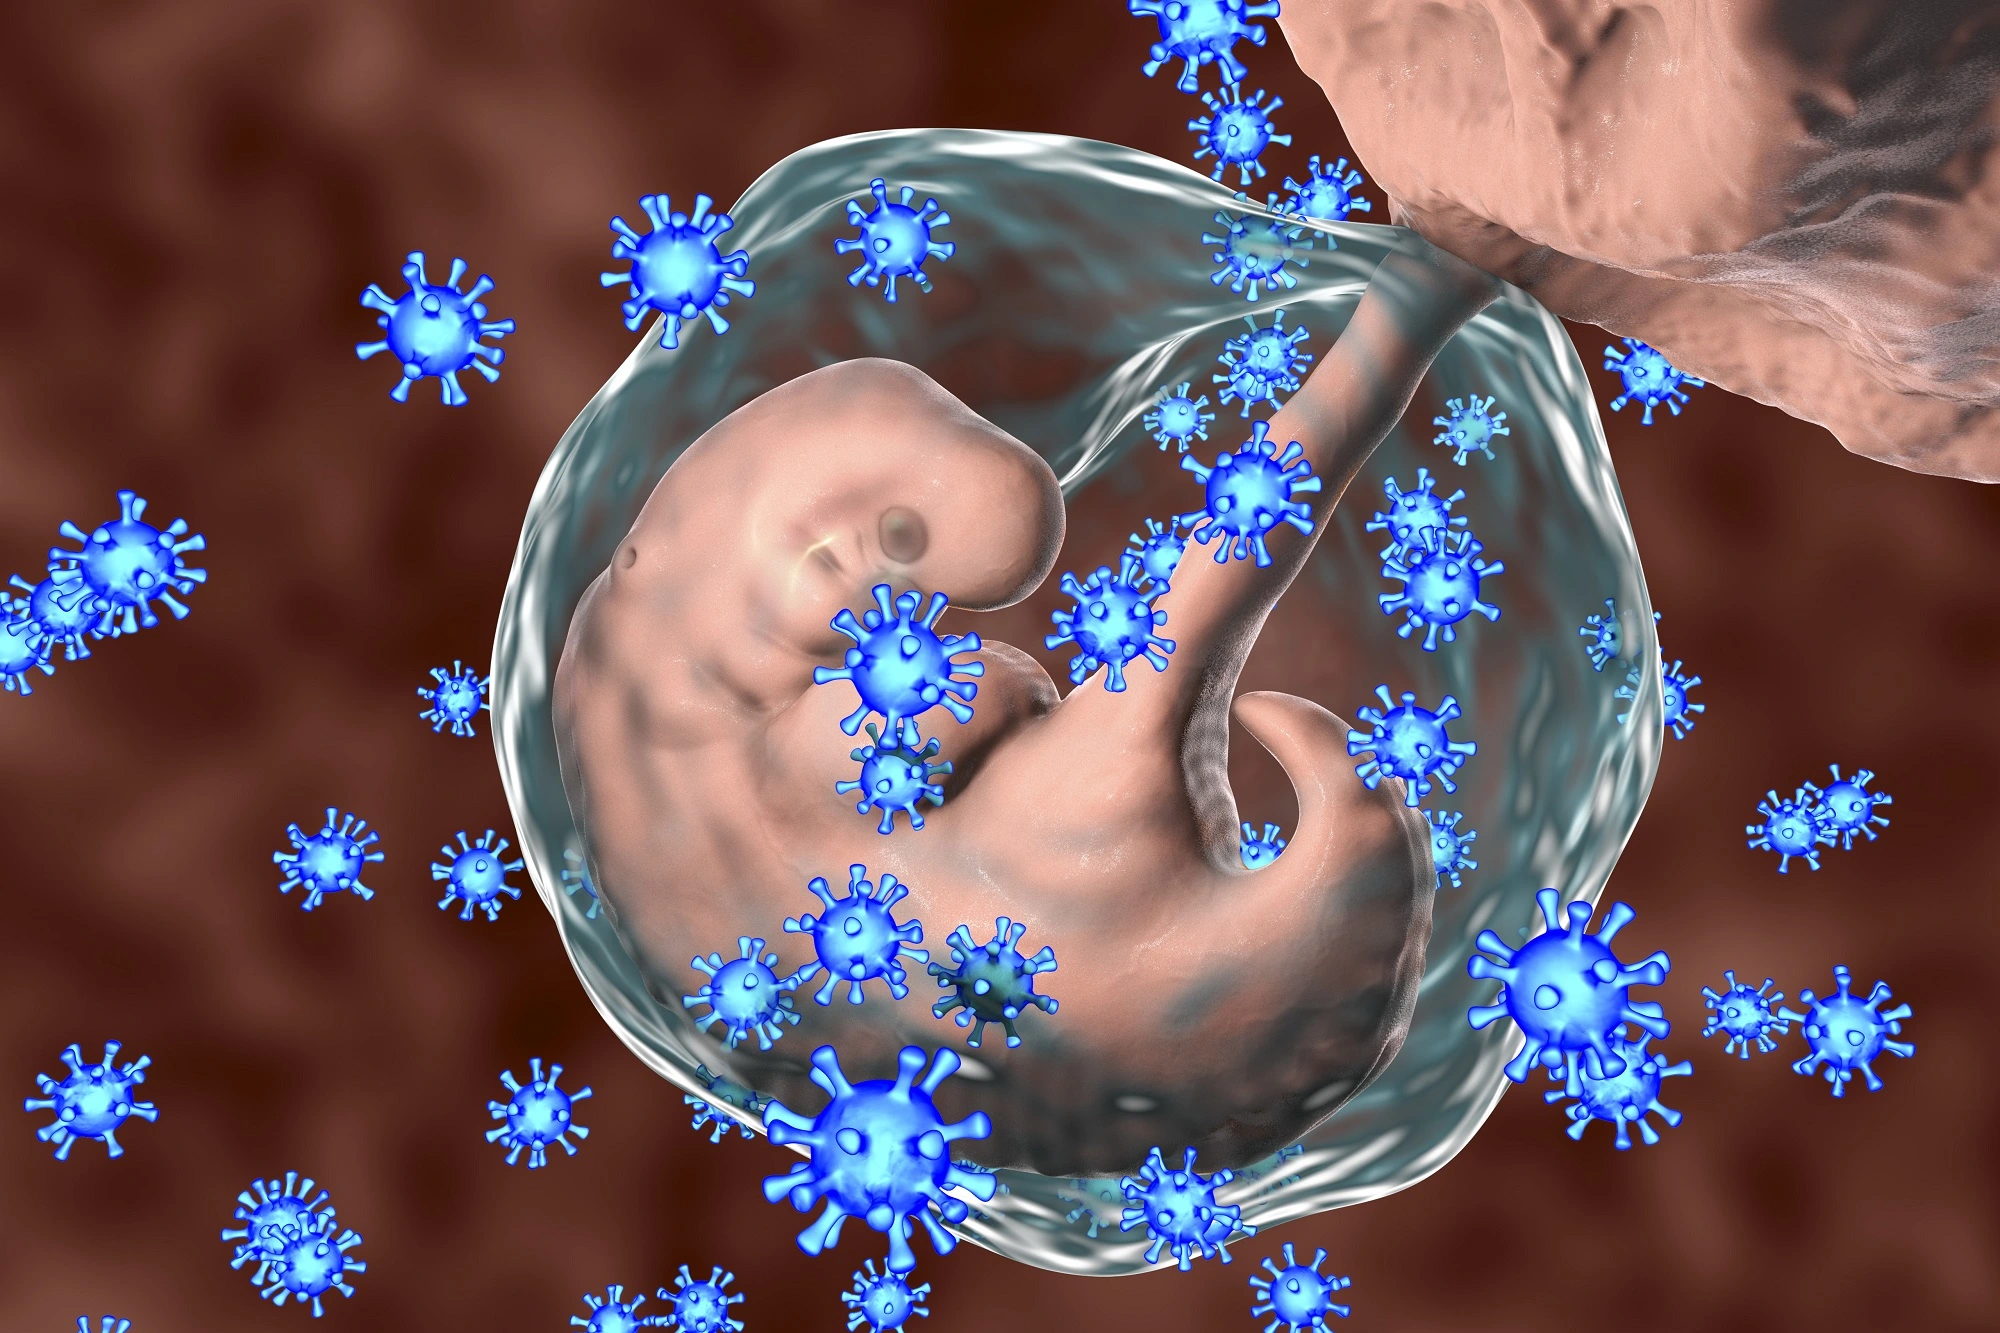 Поражения органов и систем у детей, родившихся от матерей с острой цитомегаловирусной инфекцией